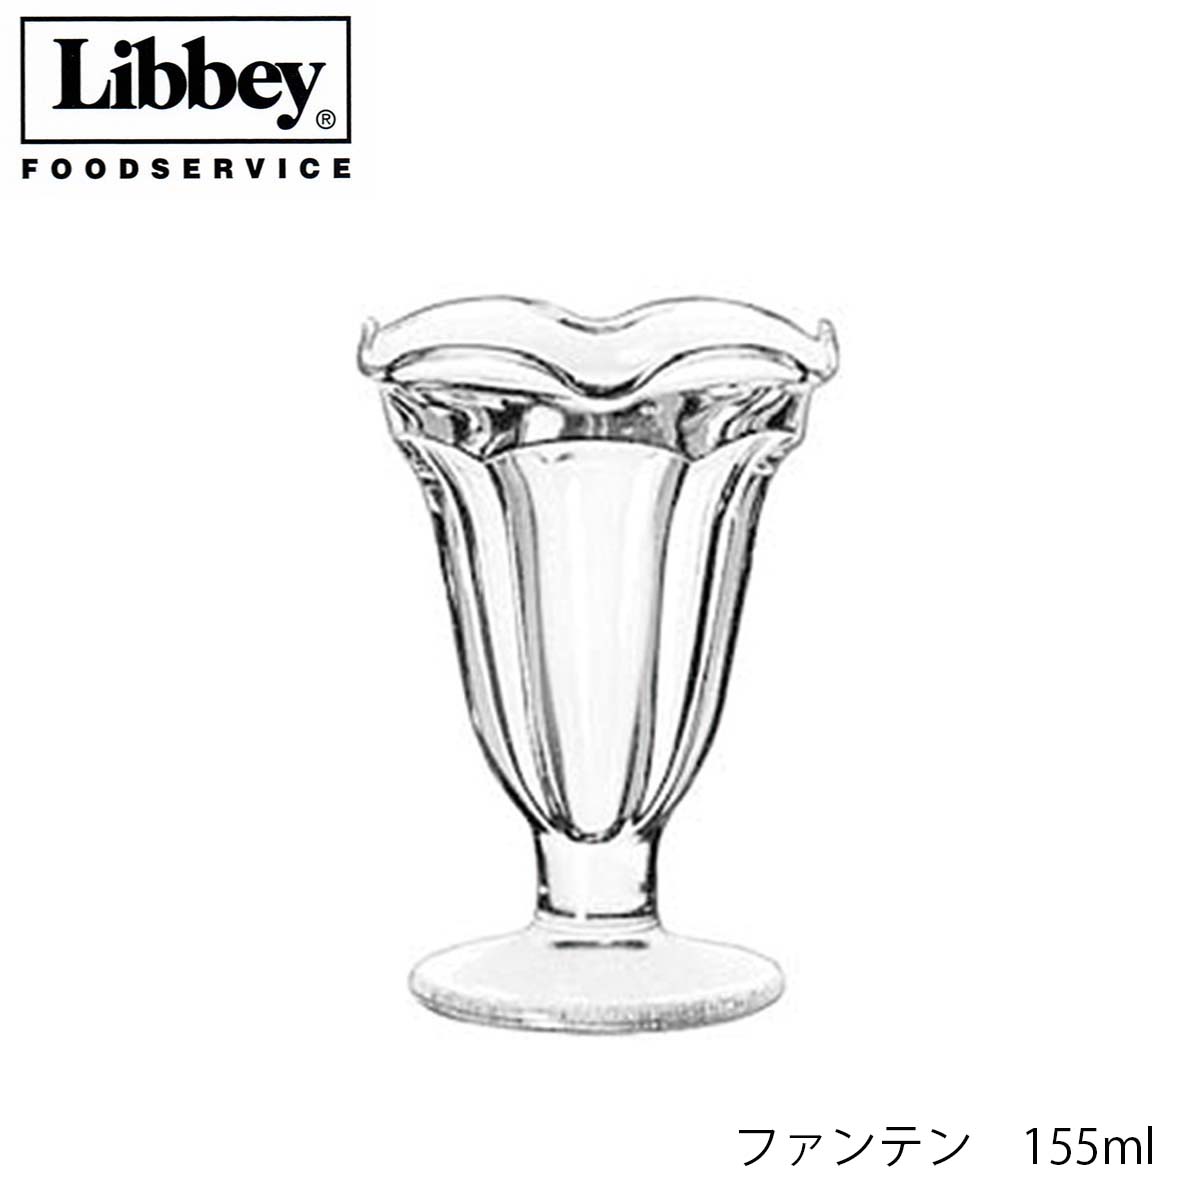 ソーダガラス製 Libbey 最安値 福袋特集 リビー 4個セット 155ml ファンテン